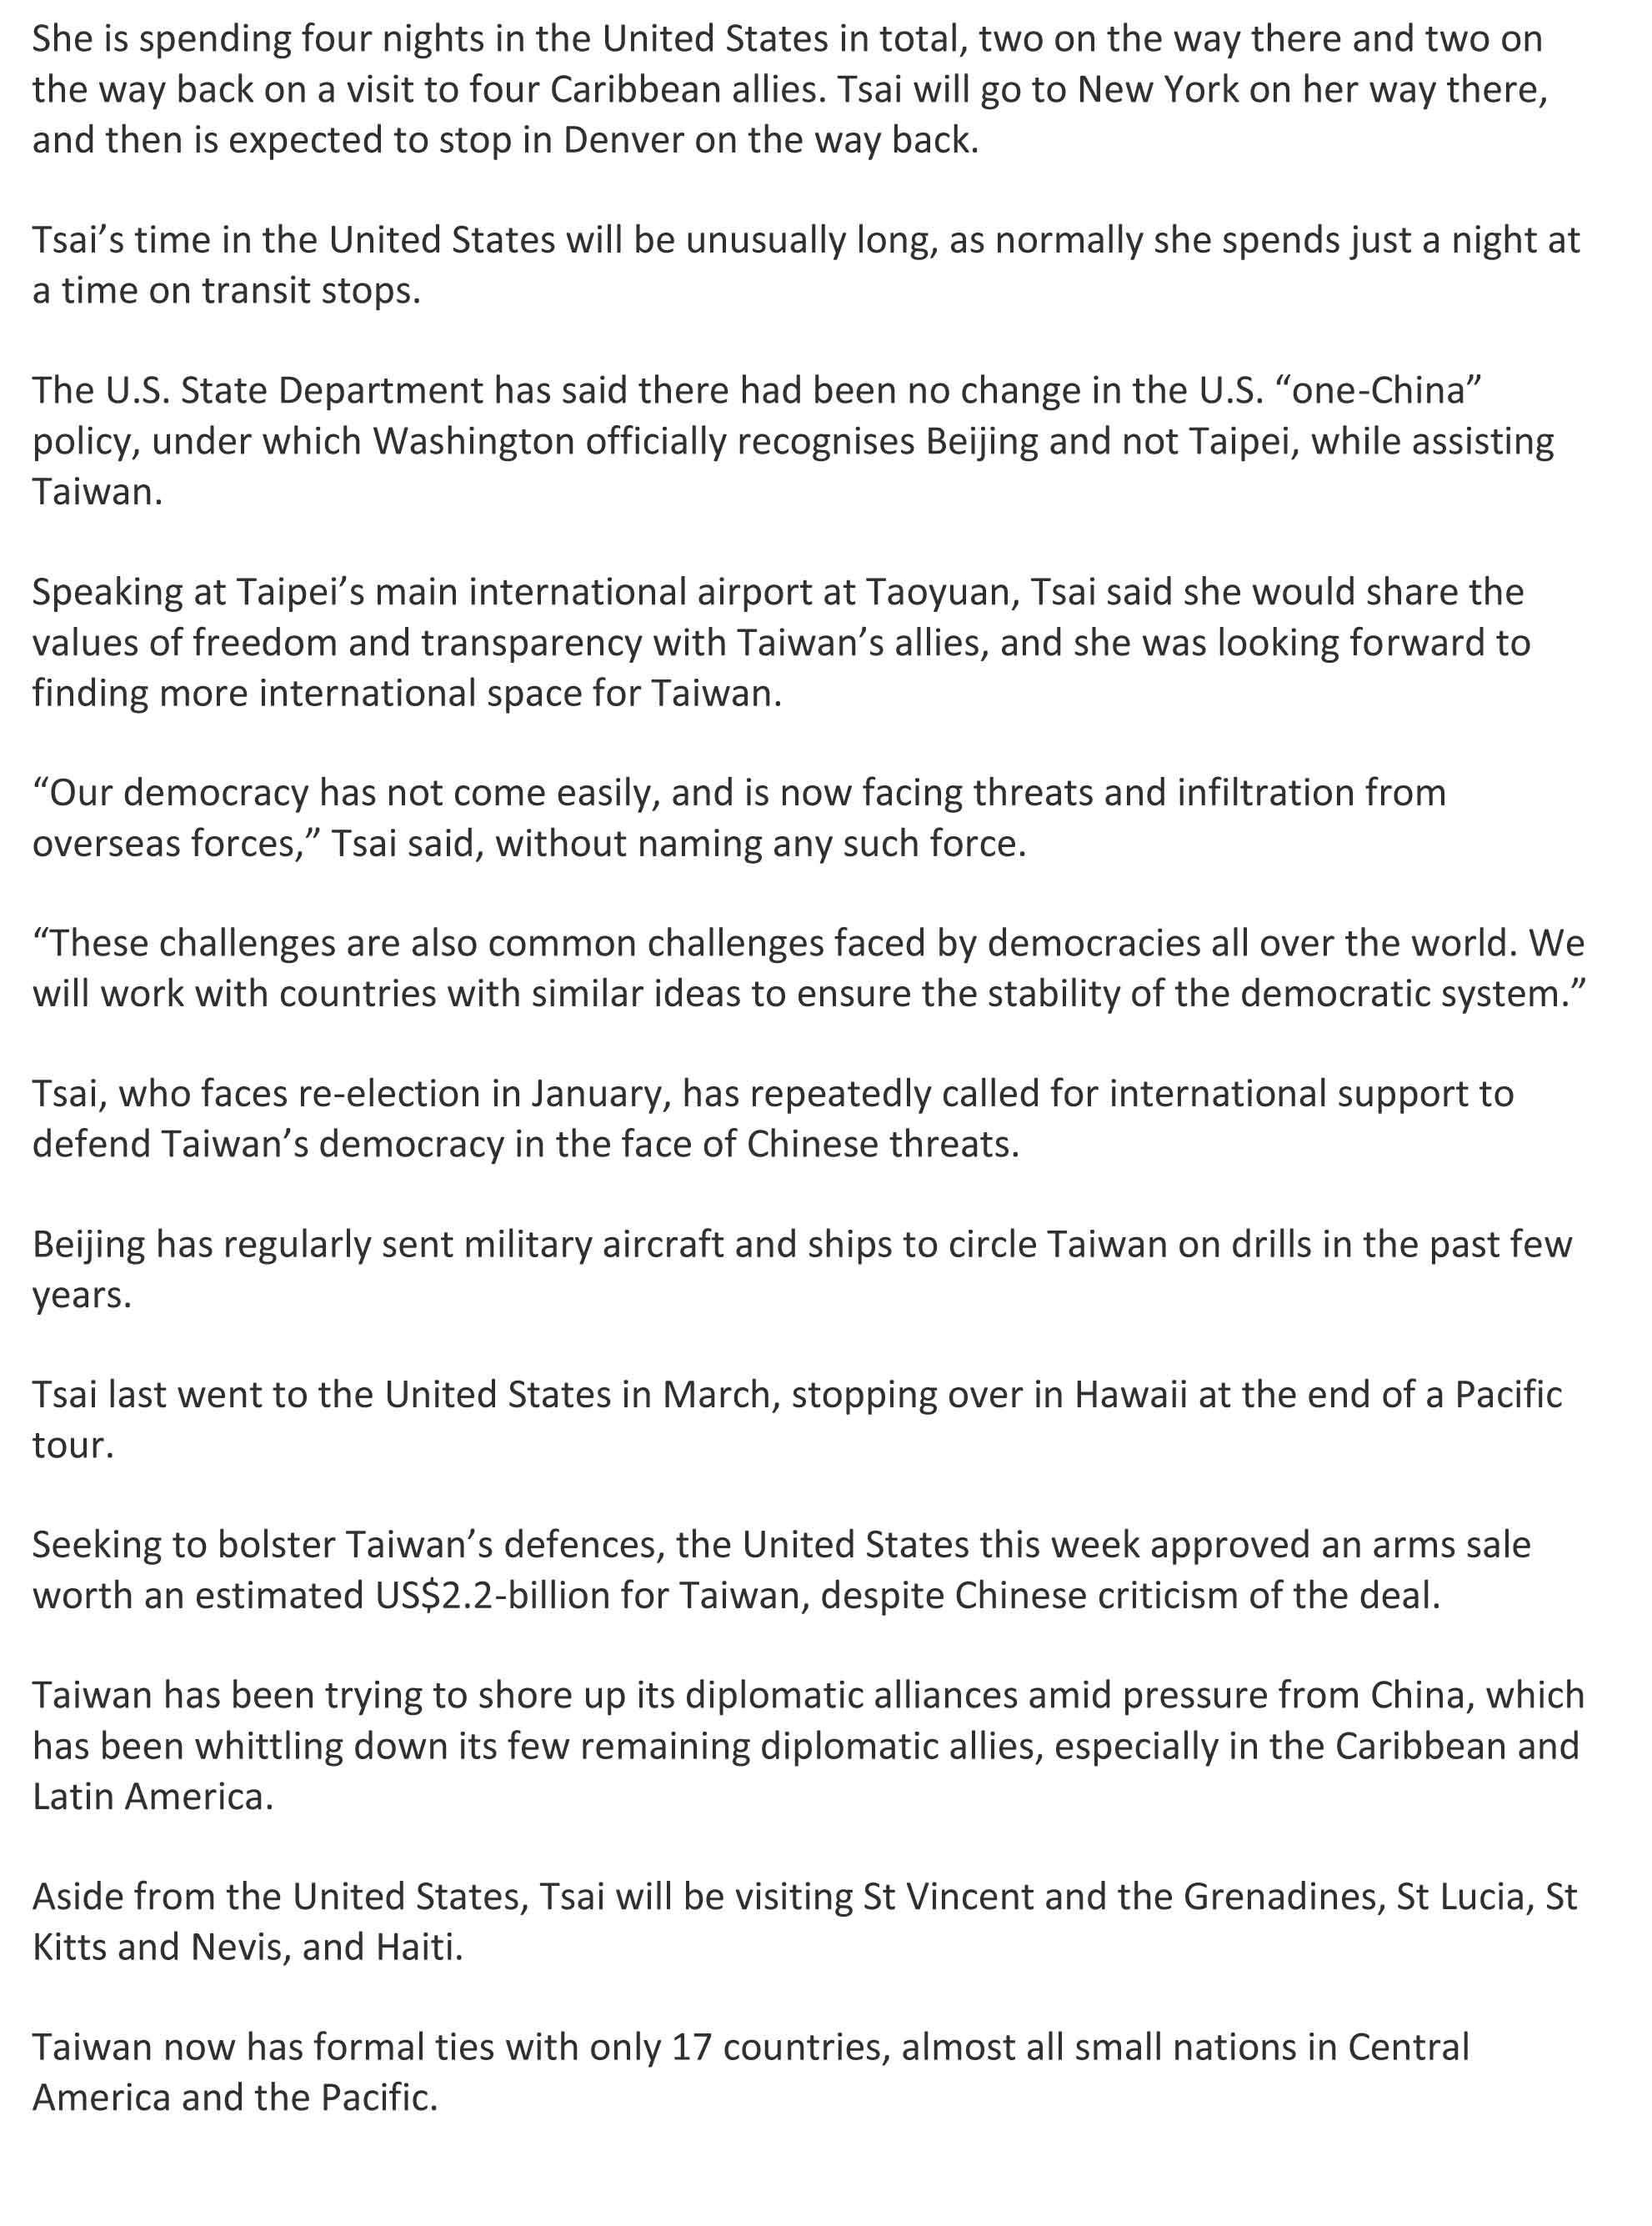 臺灣總統蔡英文啟程訪問四友邦，行前宣稱台灣面臨「境外勢力」威脅